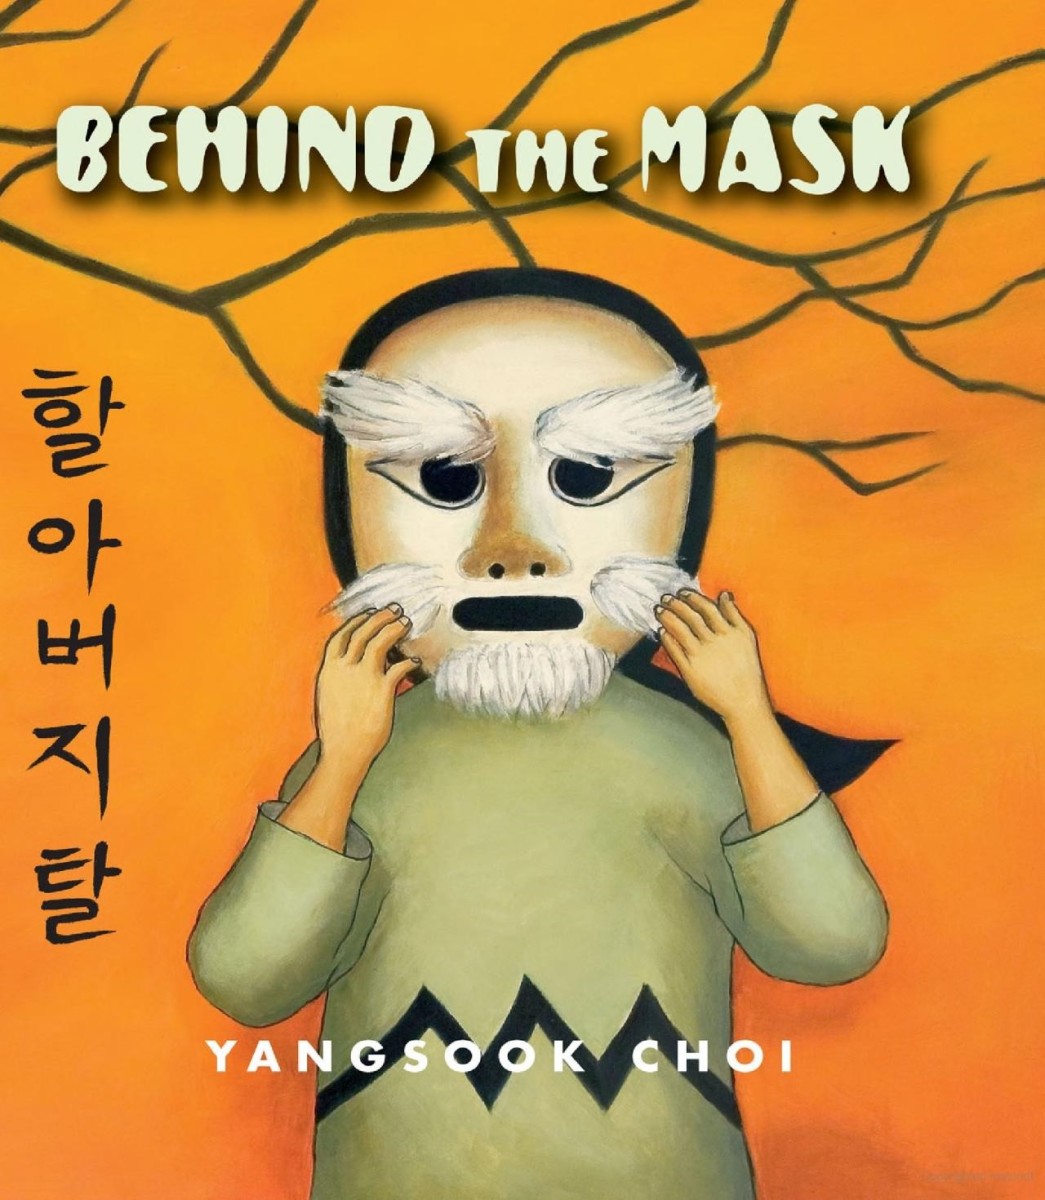 Behind the Mask by Yangsook Choi